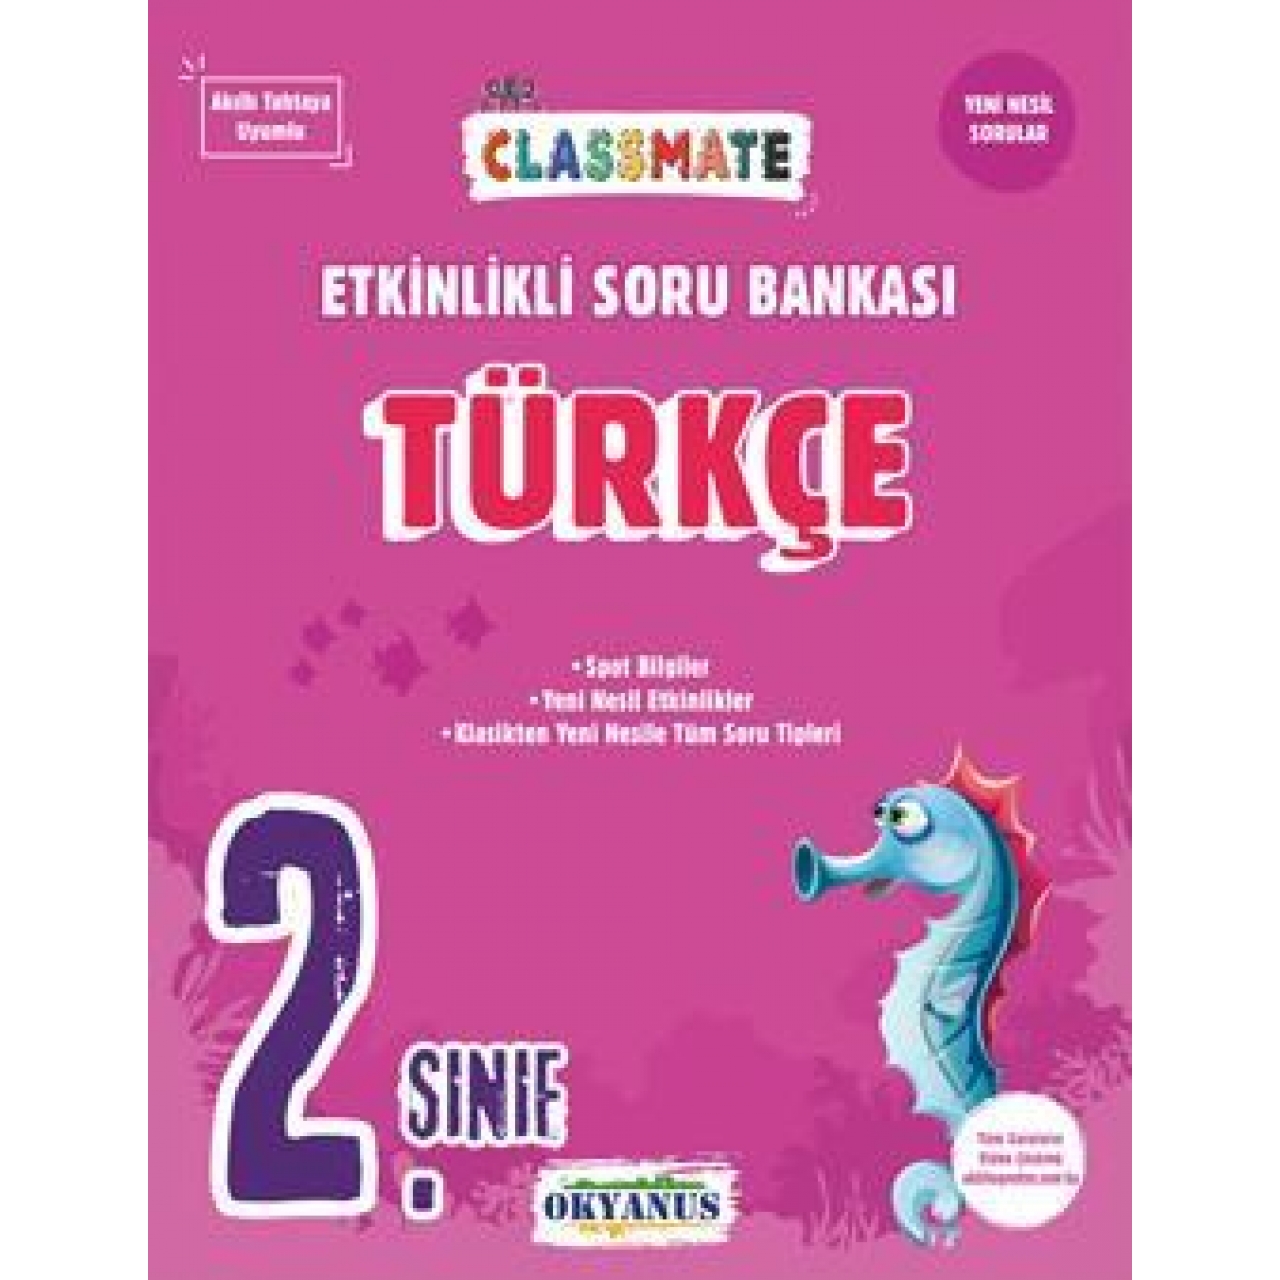 2. Sınıf Classmate Türkçe Etkinlikli Soru Bankası Okyanus Yayınları